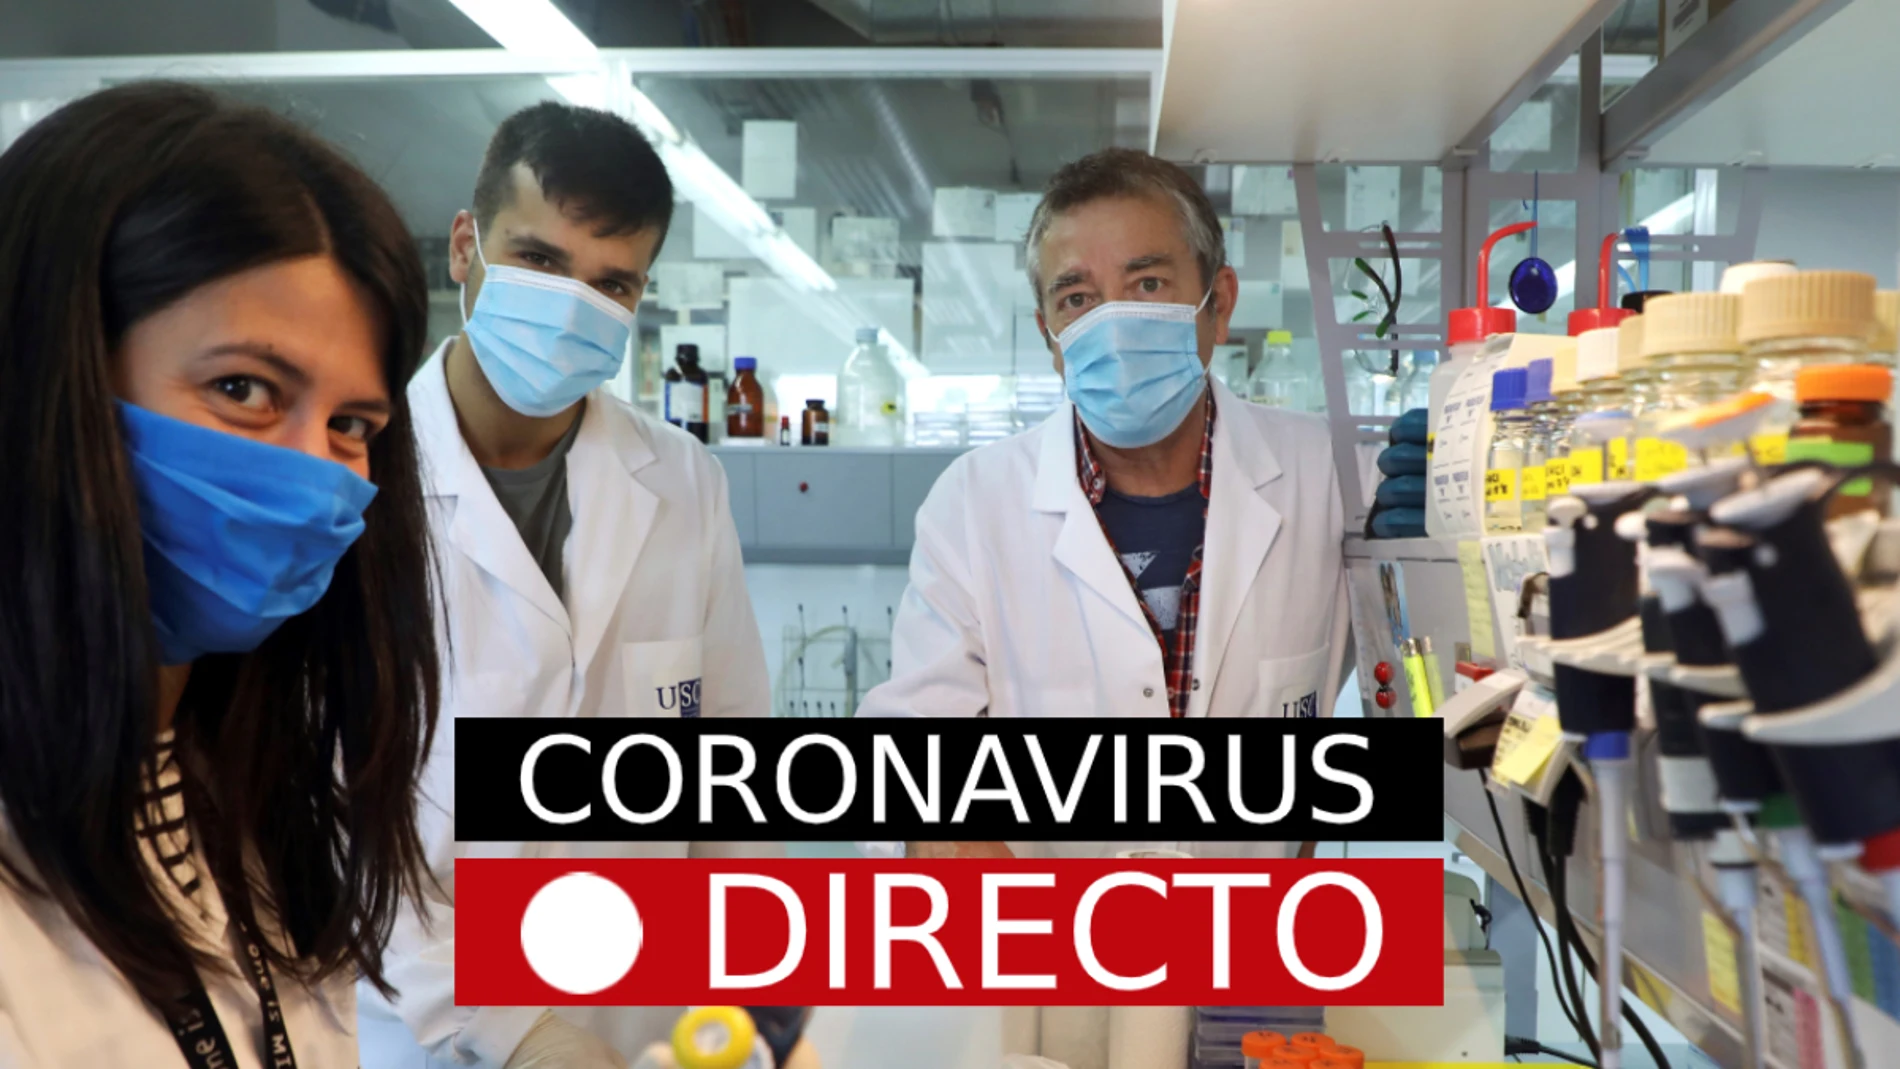 Coronavirus España: última hora sobre los nuevos contagios y los brotes, en directo